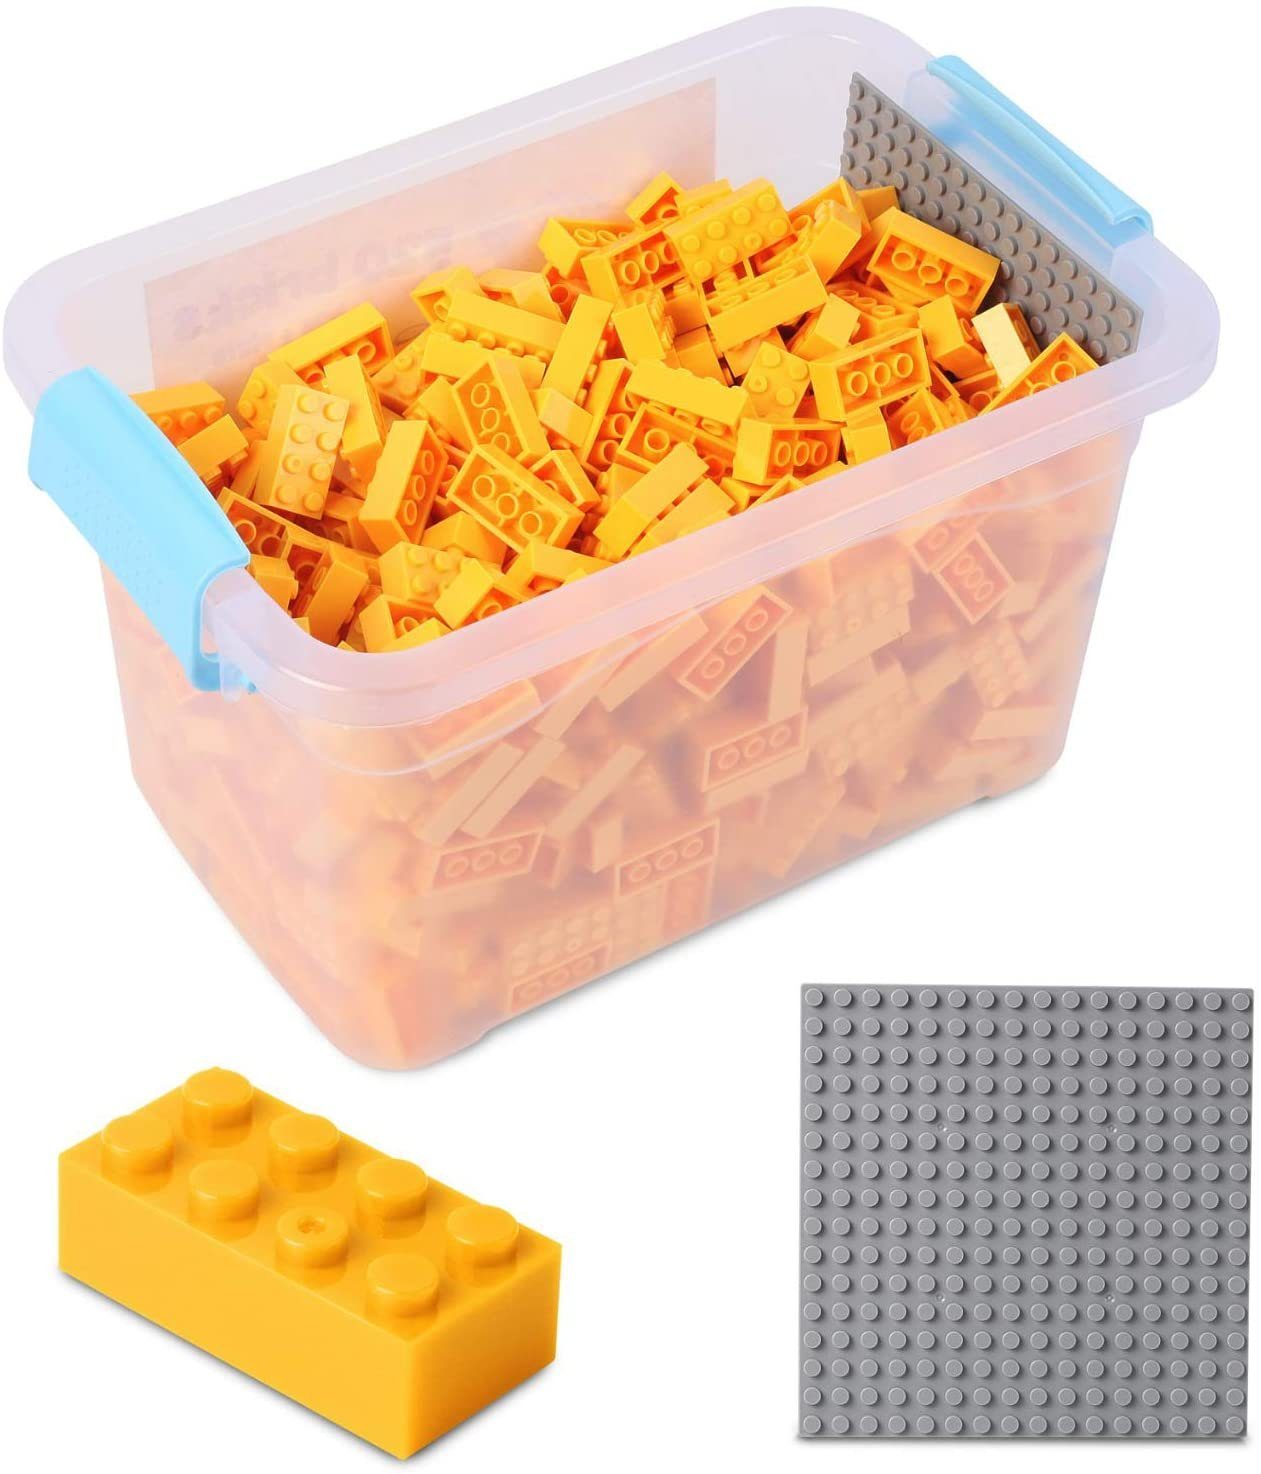 Farben Set), Bausteine Box-Set Konstruktionsspielsteine Platte - mit verschiedene Box, gelb Katara allen (3er Herstellern Kompatibel Anderen 520 + Steinen + zu